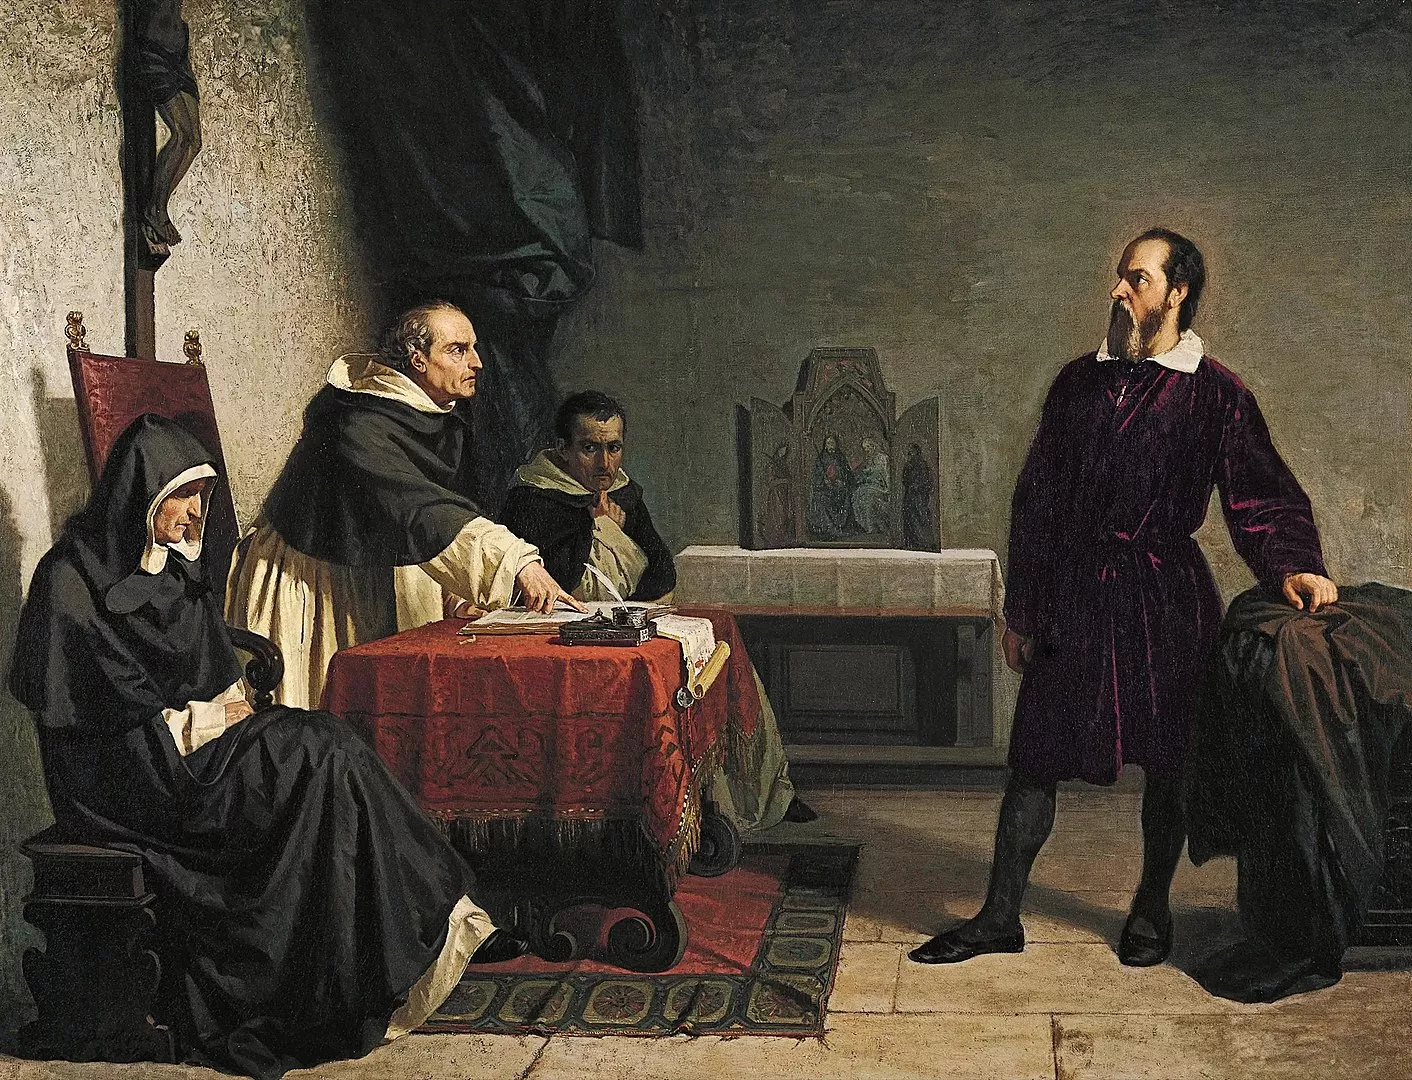 Galileu, jutjat per la Inquisició